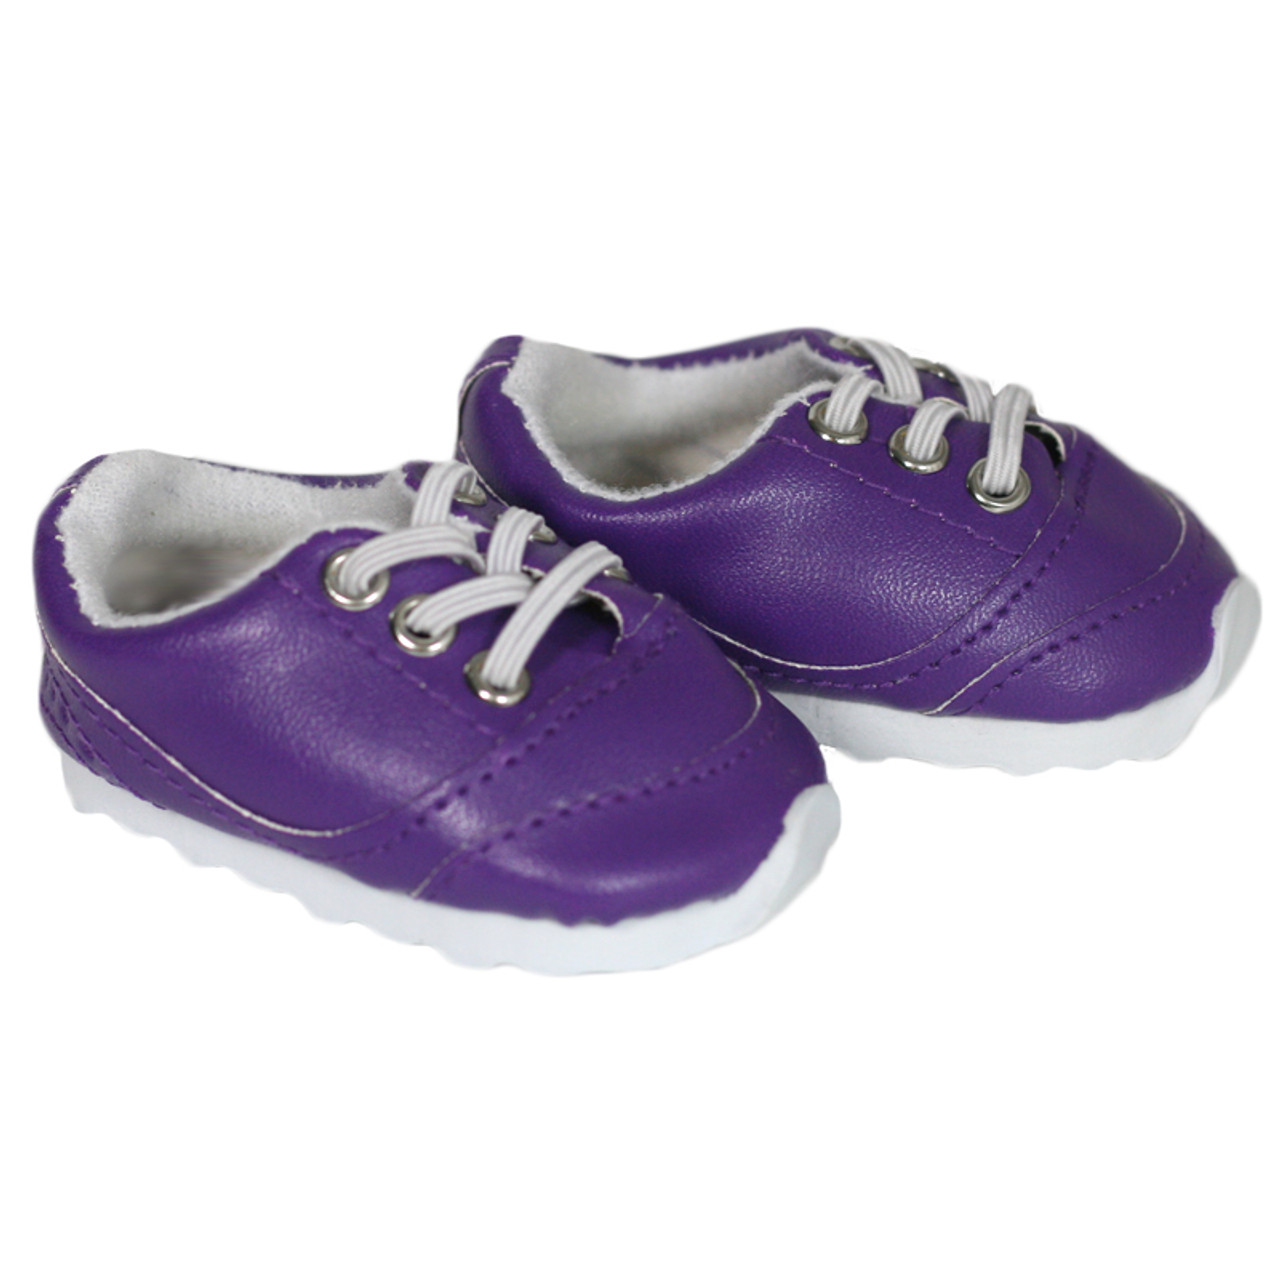 X94. Purple No-Tie Sneakers - Silly Monkey